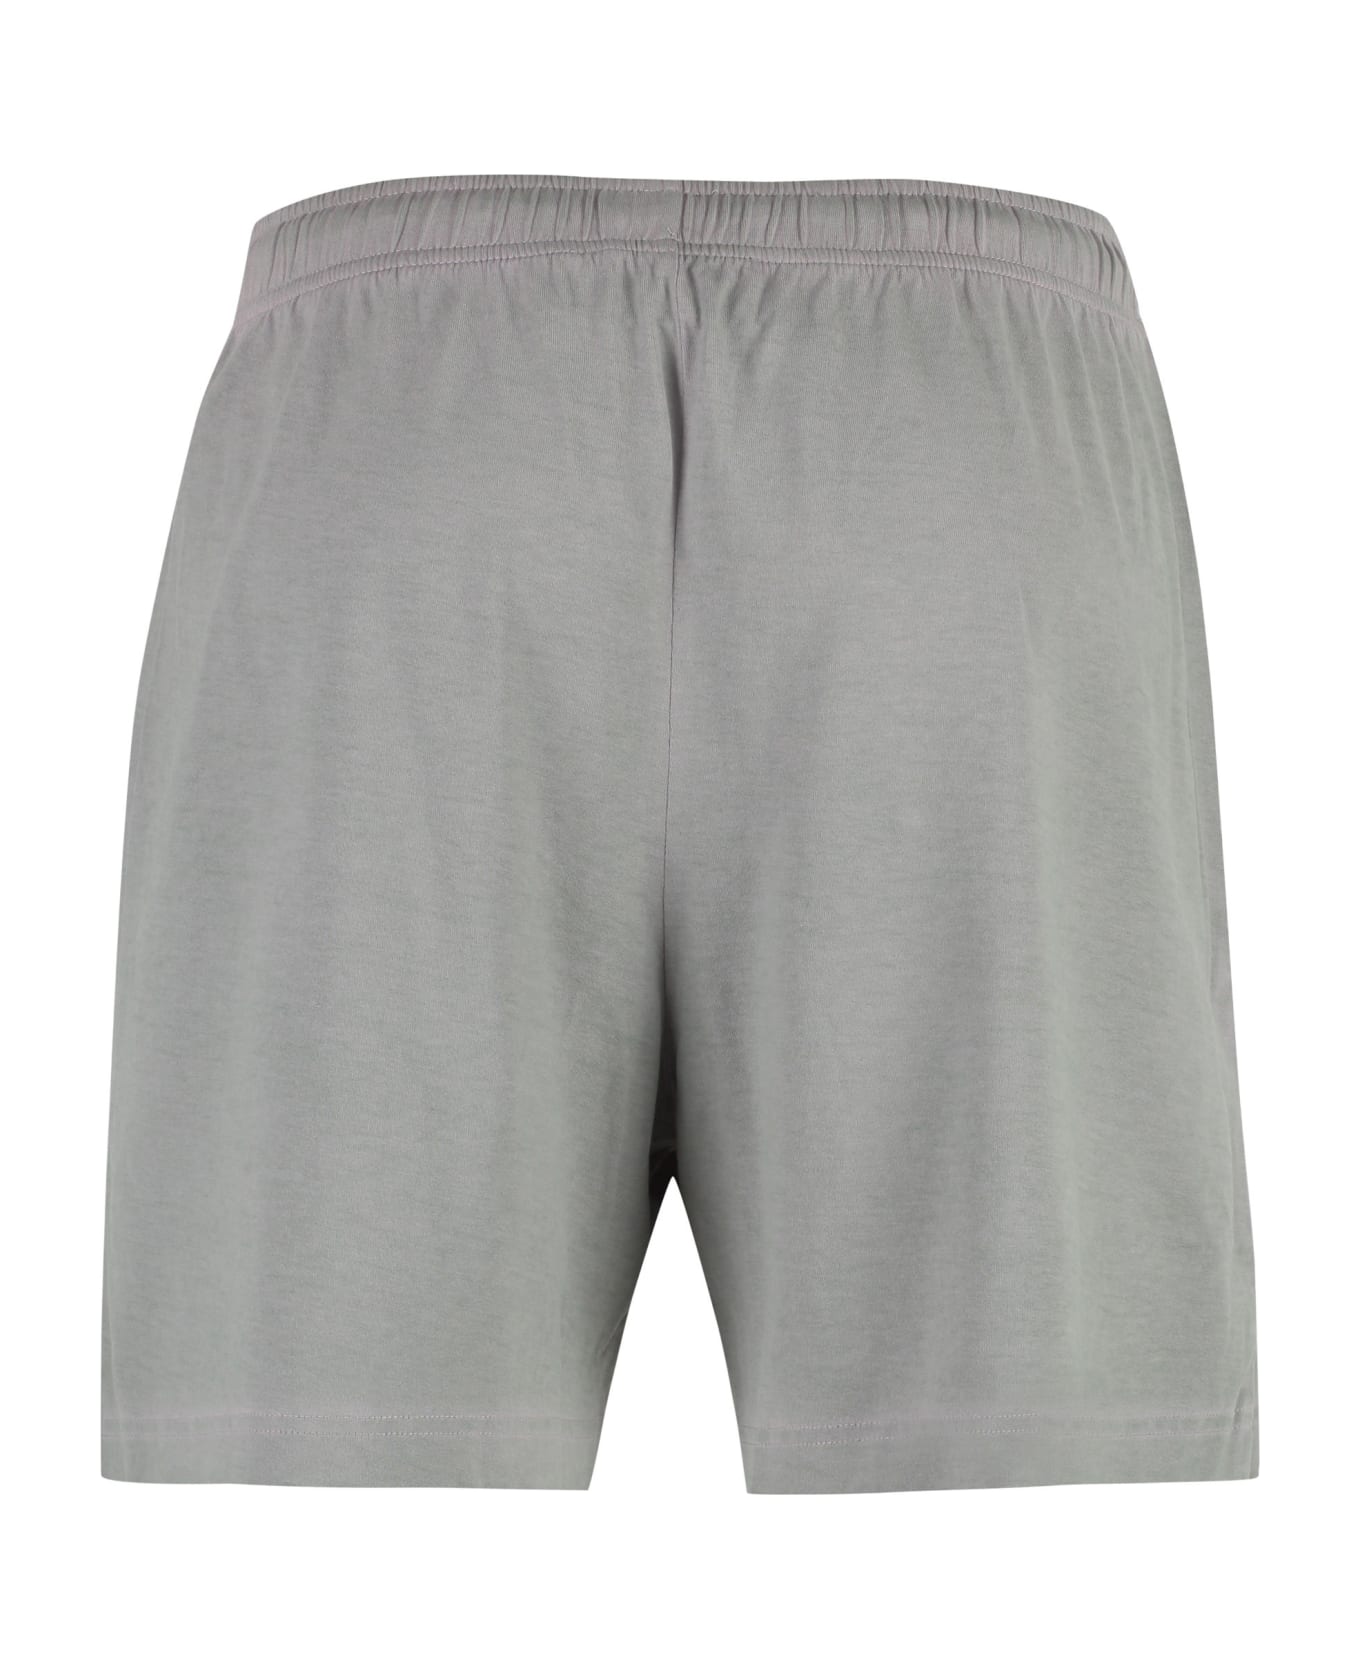 Acne Studios Bermuda Shorts - grey